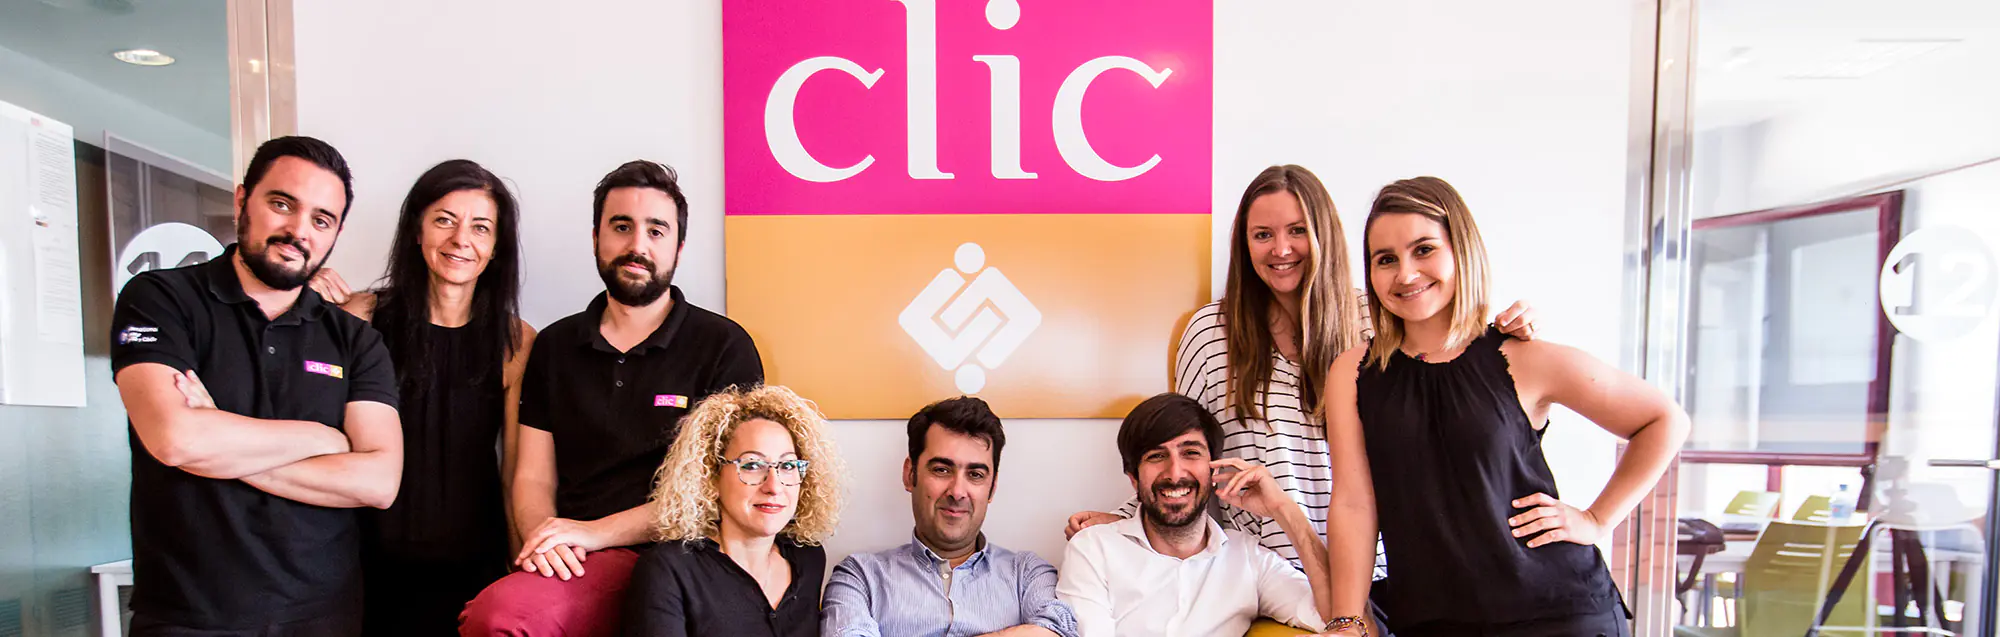 Les programmes de visa de étudier et travailler CLIC Cádiz